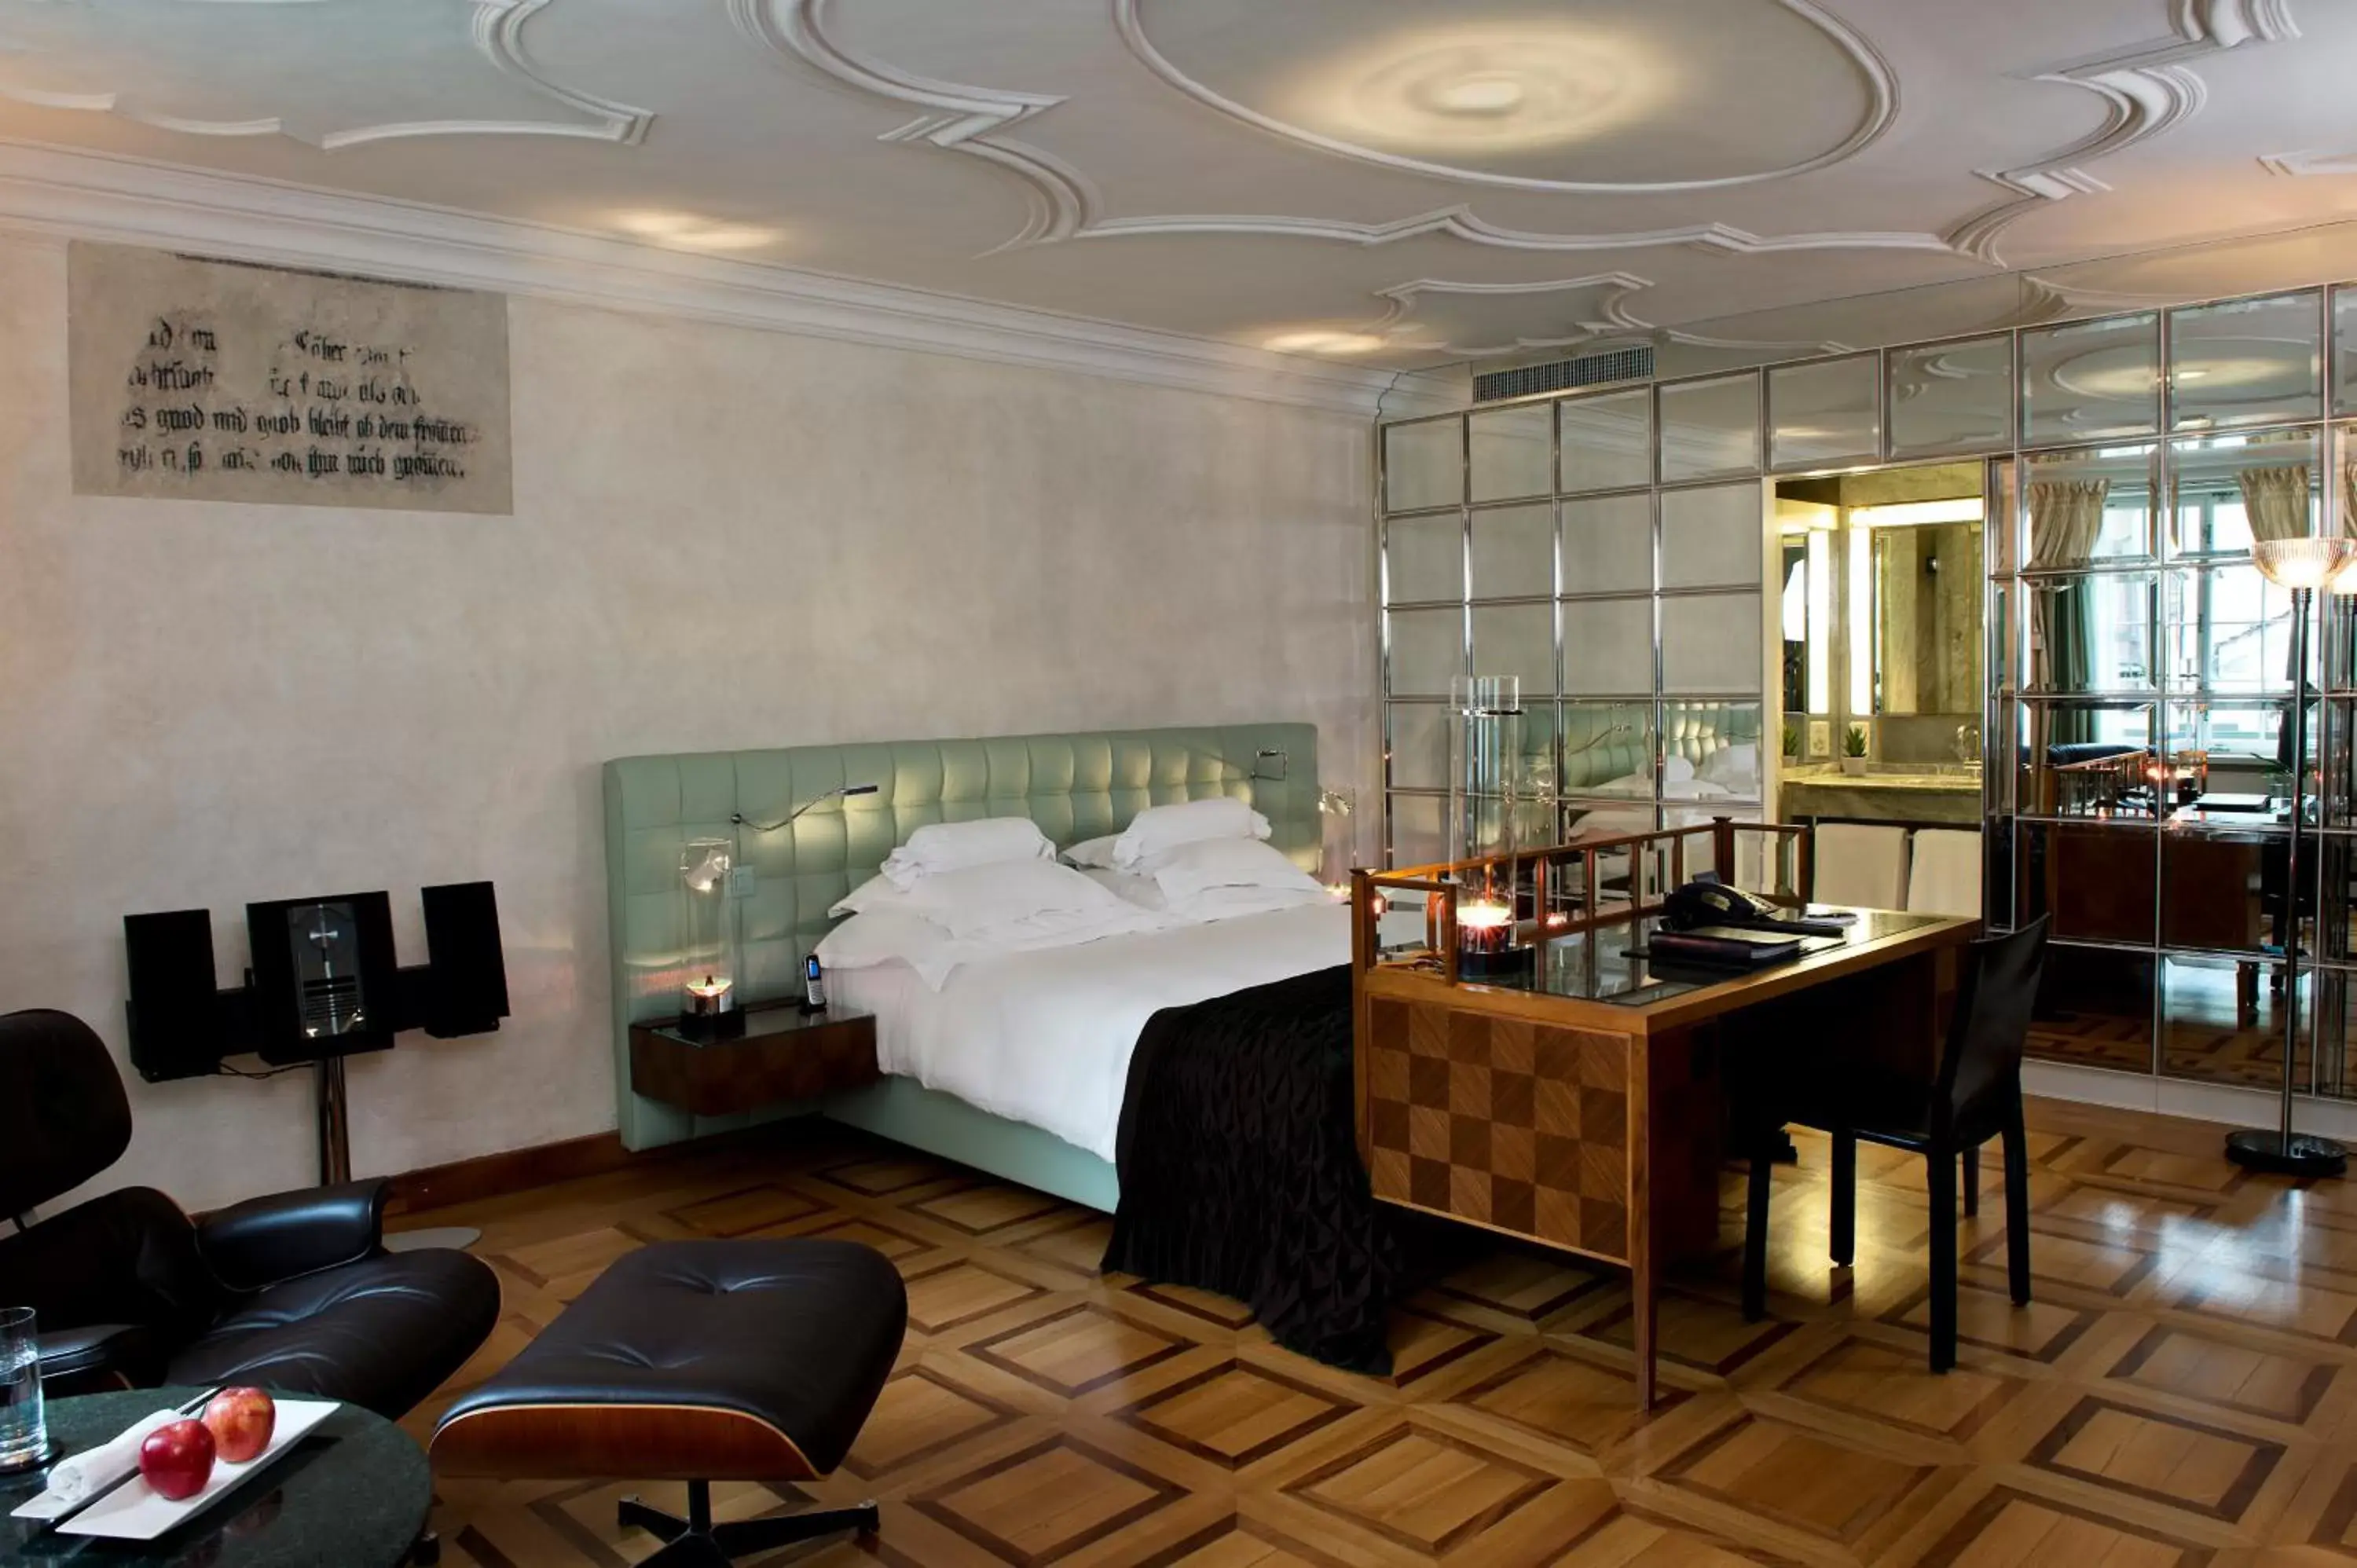 Widder Hotel - Zurichs luxury hideaway